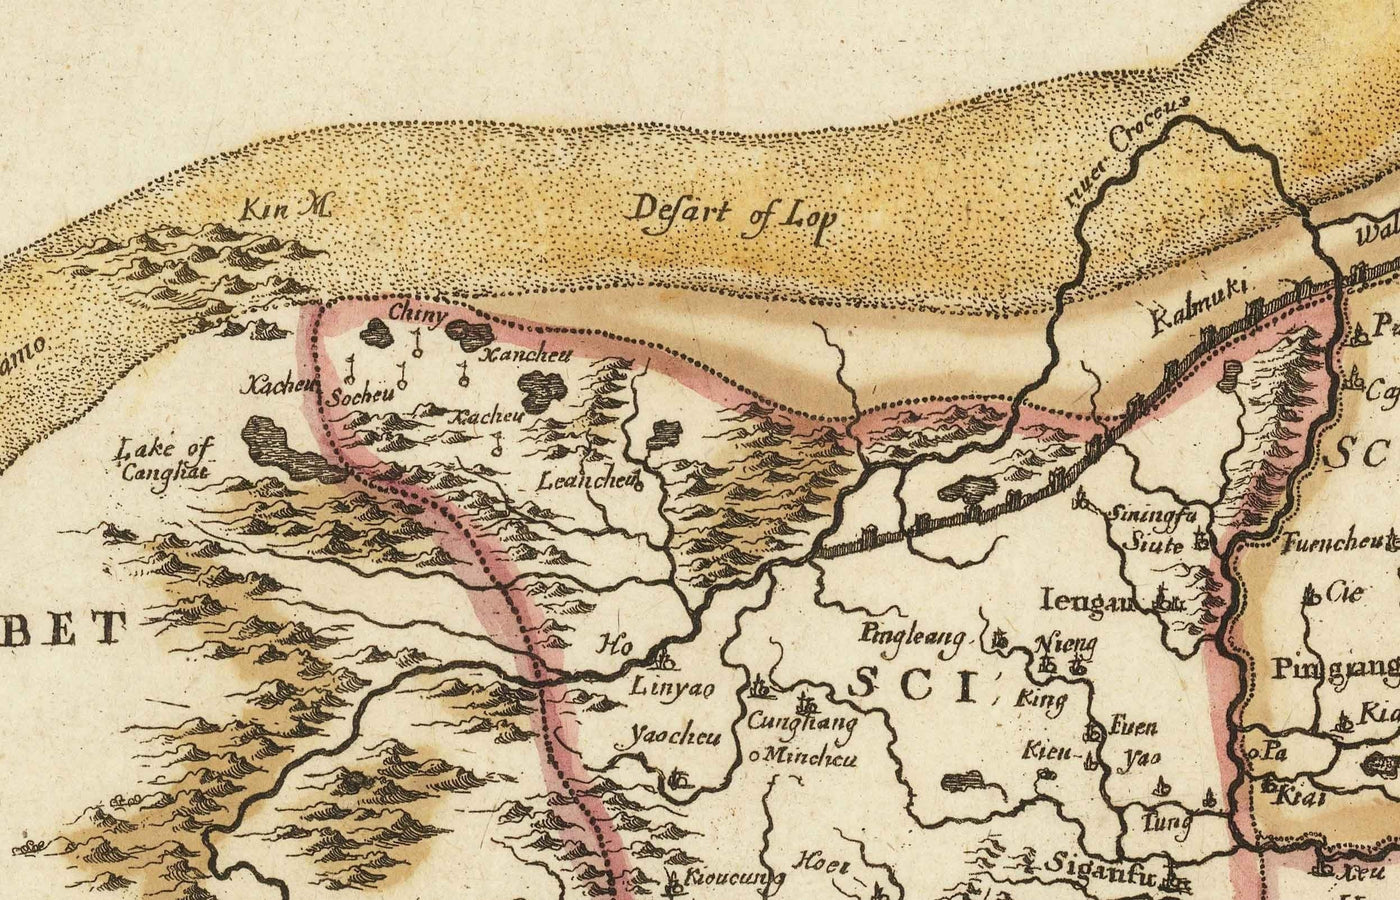 Mapa antiguo de China y Asia Oriental, 1669 por Blome - Gran Muralla, Cantones, Corea, Japón, Vietnam, Tailandia, Camboya